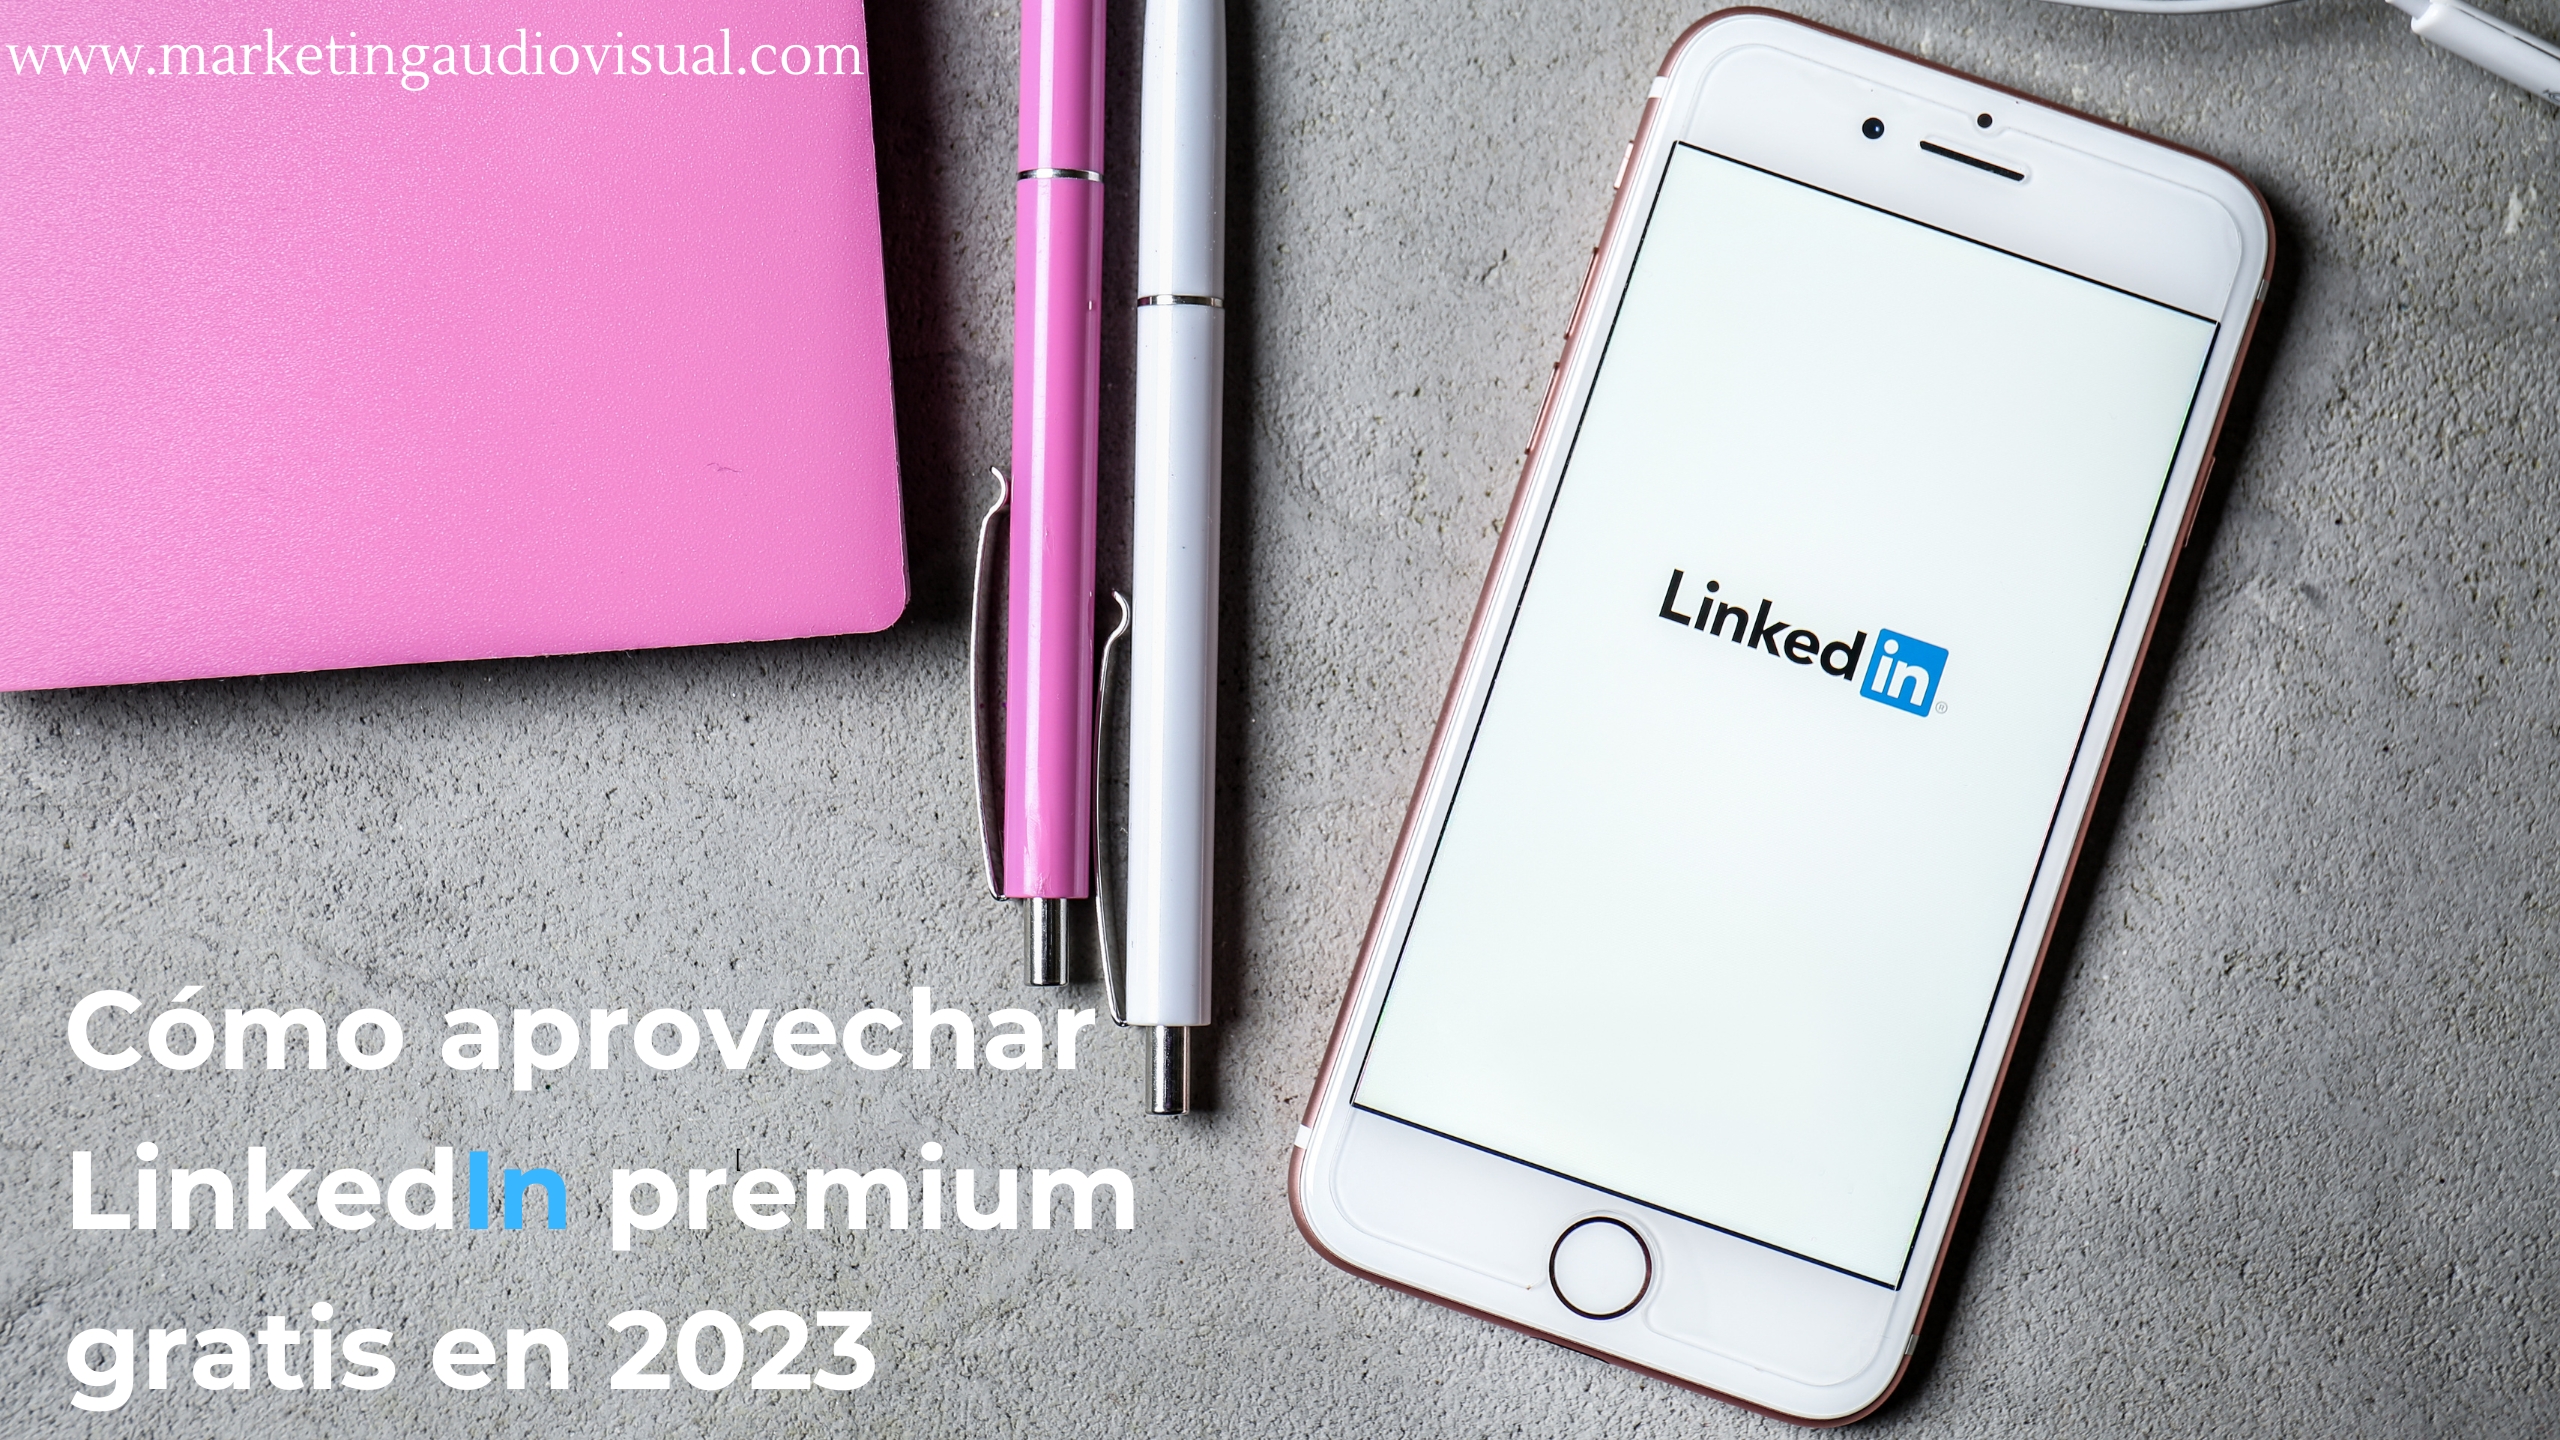 Cómo aprovechar LinkedIn premium gratis en 2023